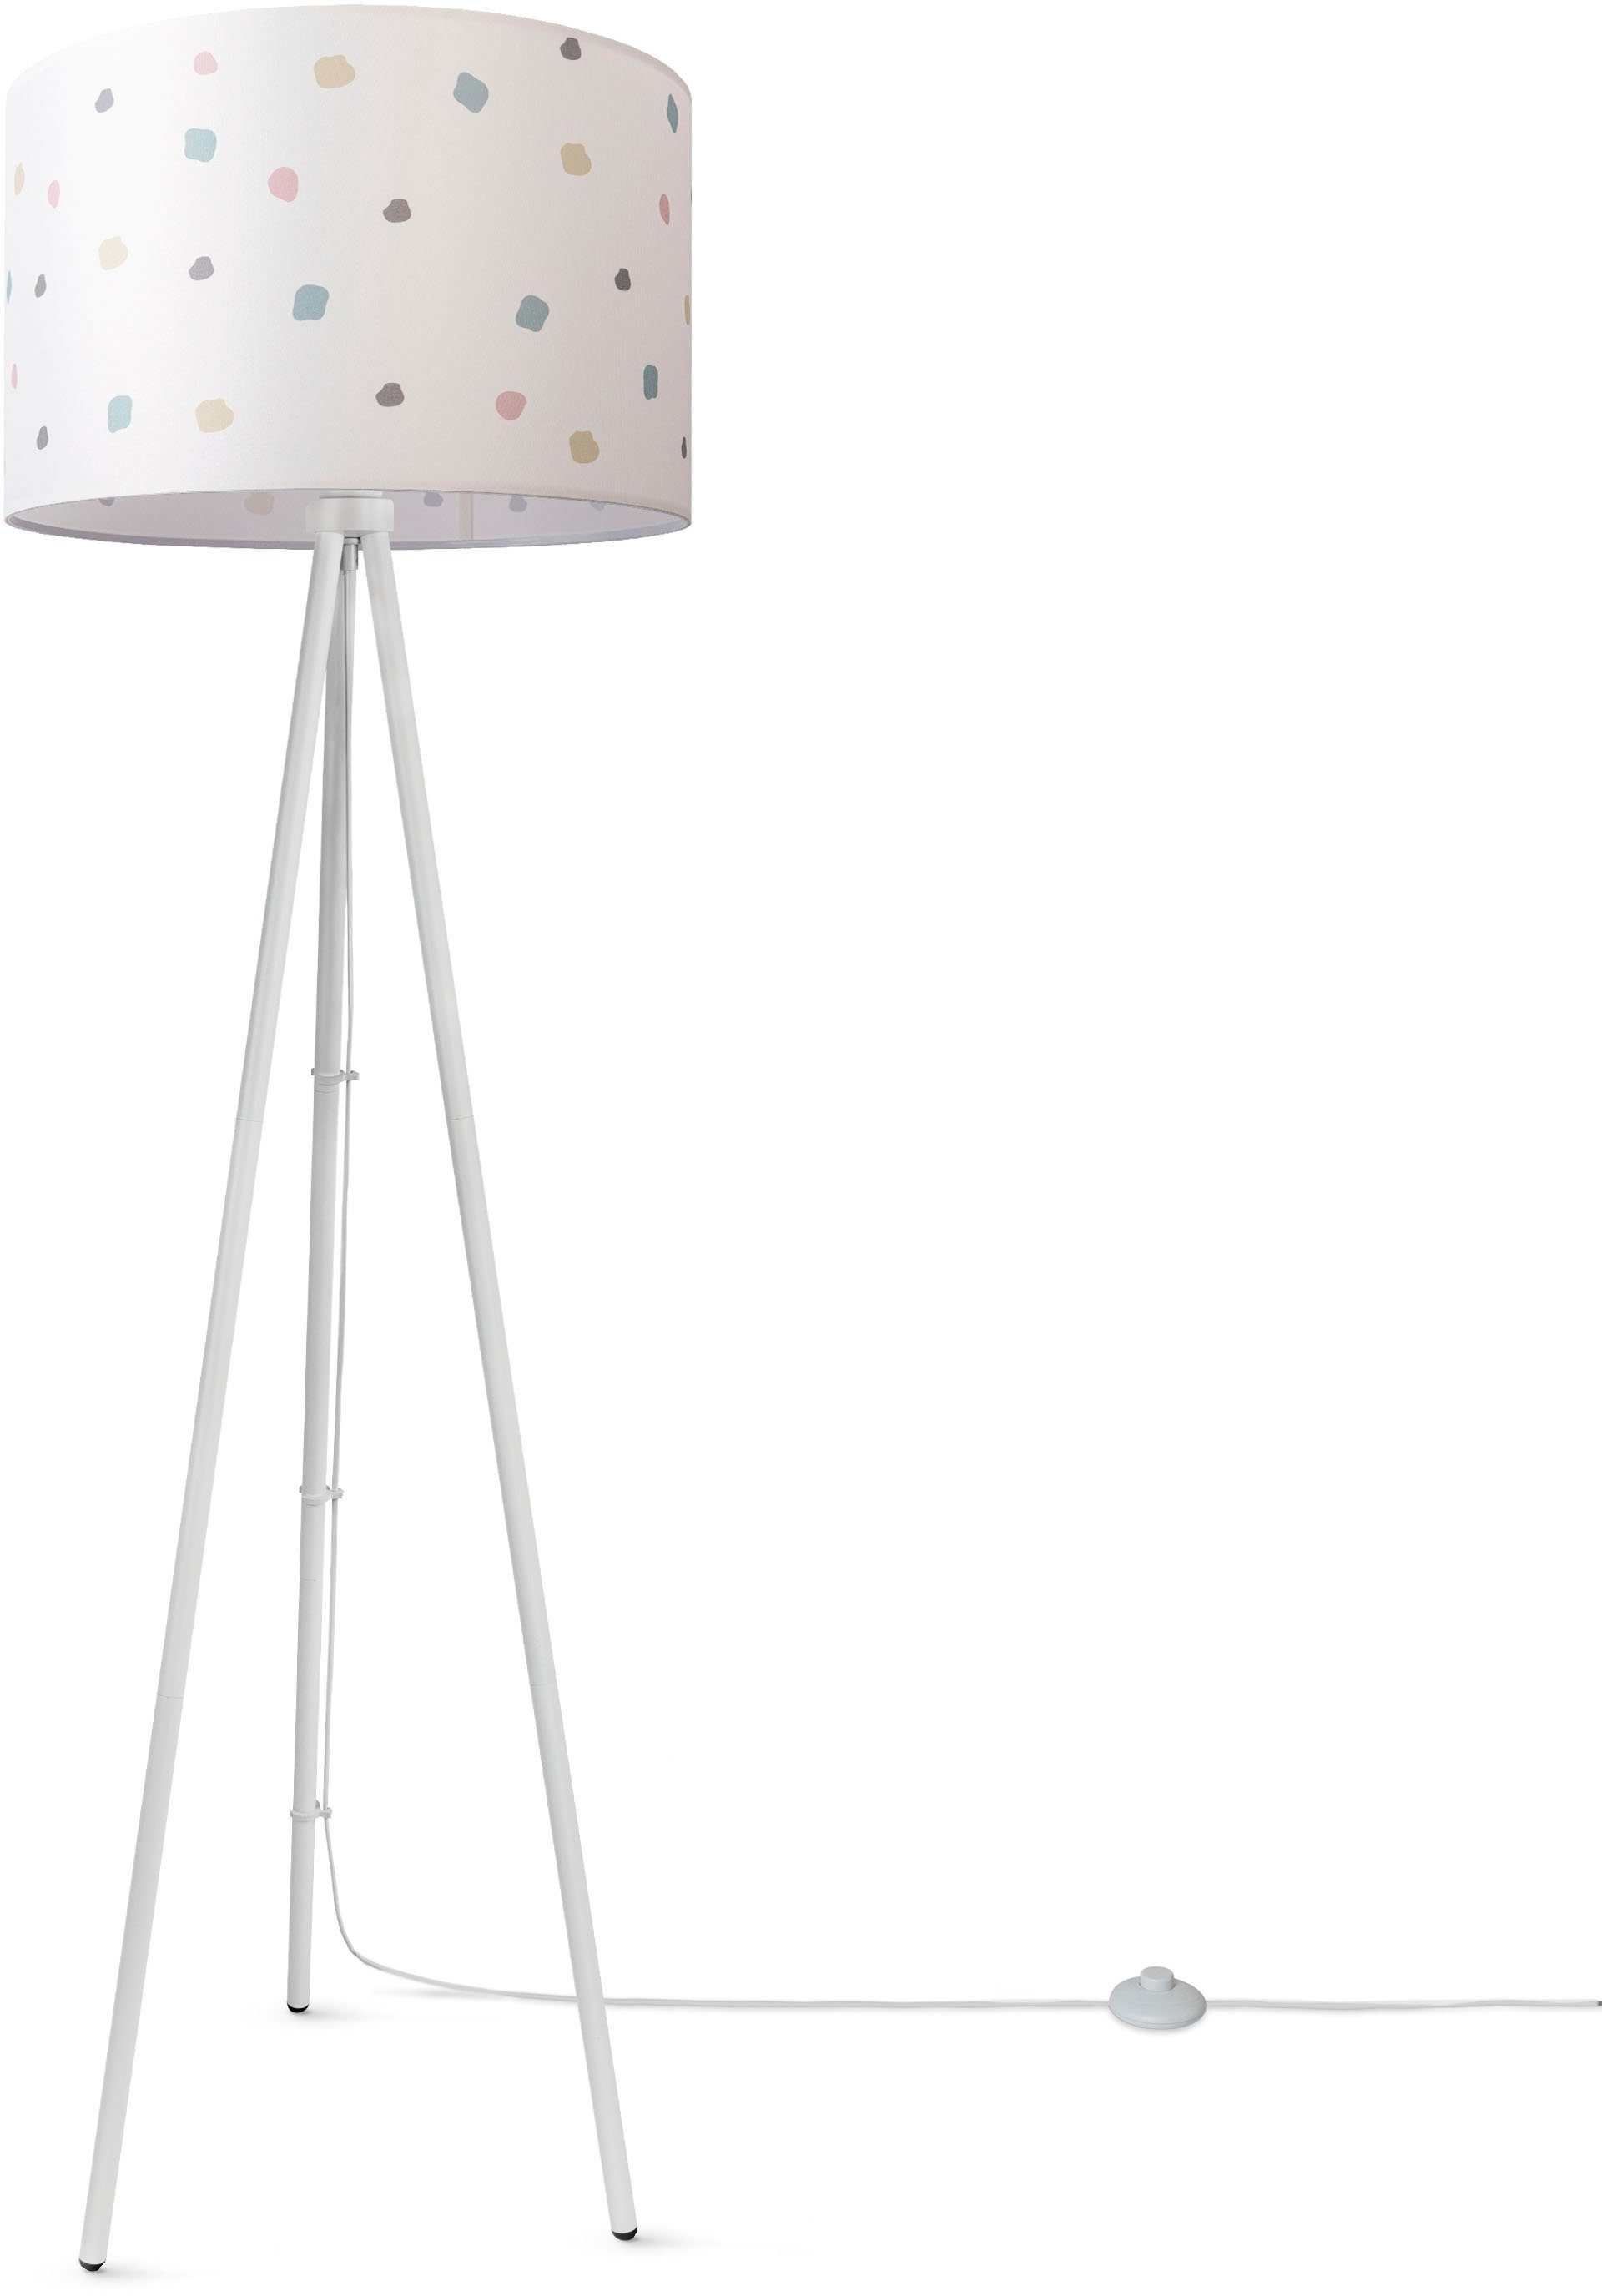 Bunt Home Standlampe Stecker Dreibein Mit Punkte Paco Dots, ohne Leuchtmittel, Stoff Stehlampe Lampenschirm Rund Trina